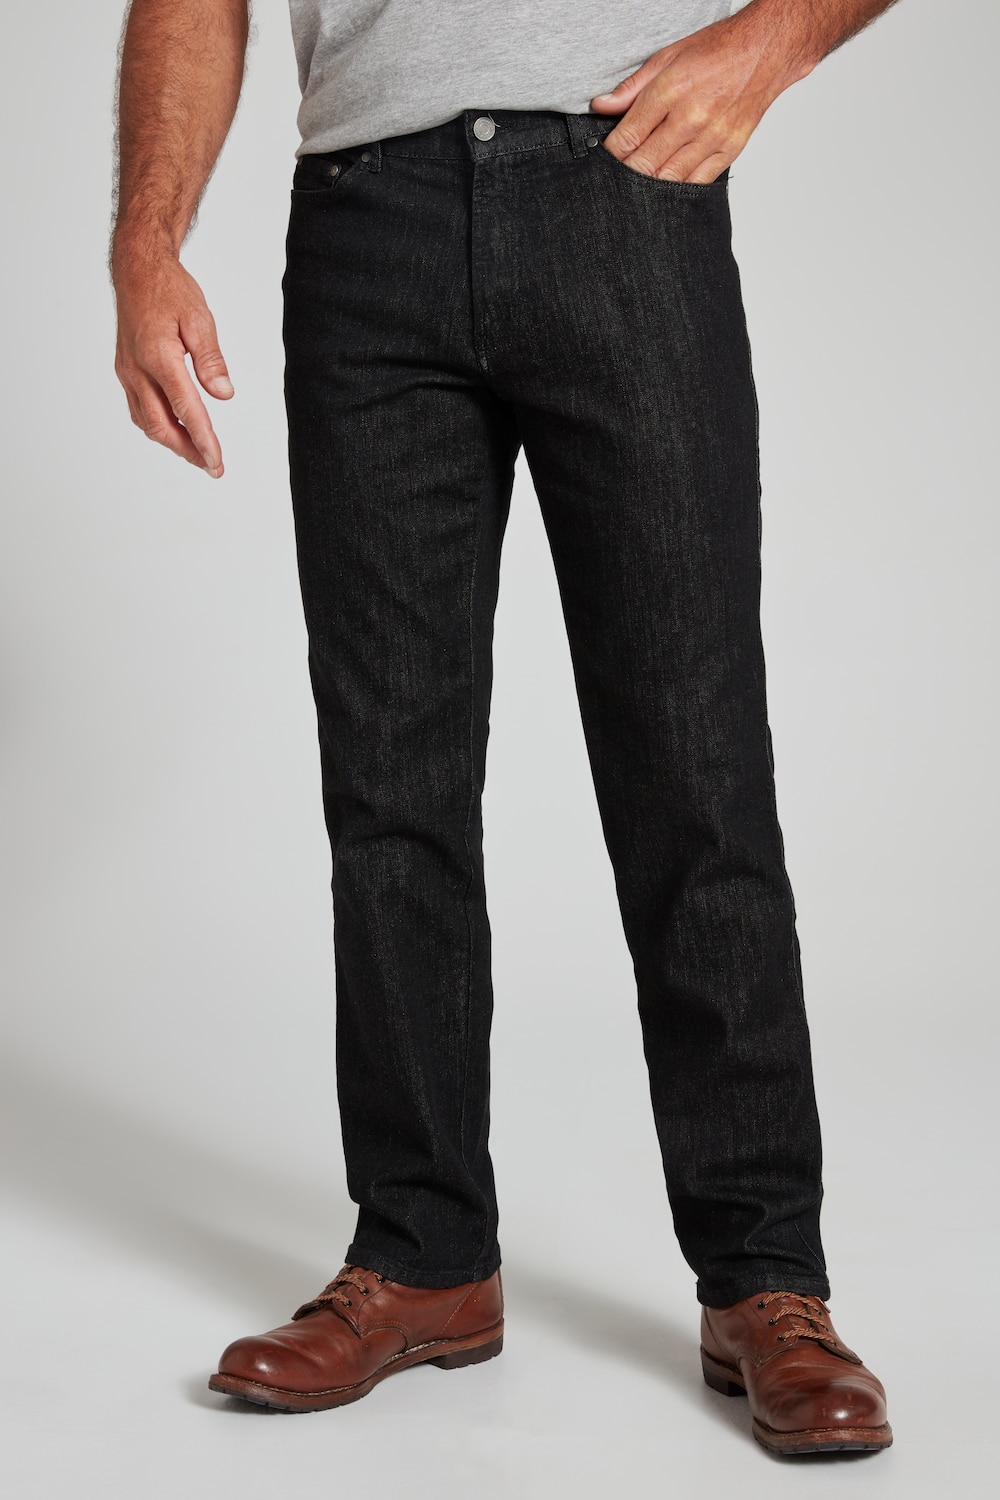 Image of Grosse Grössen Traveller-Jeans, Herren, schwarz, Größe: 26, Baumwolle, JP1880